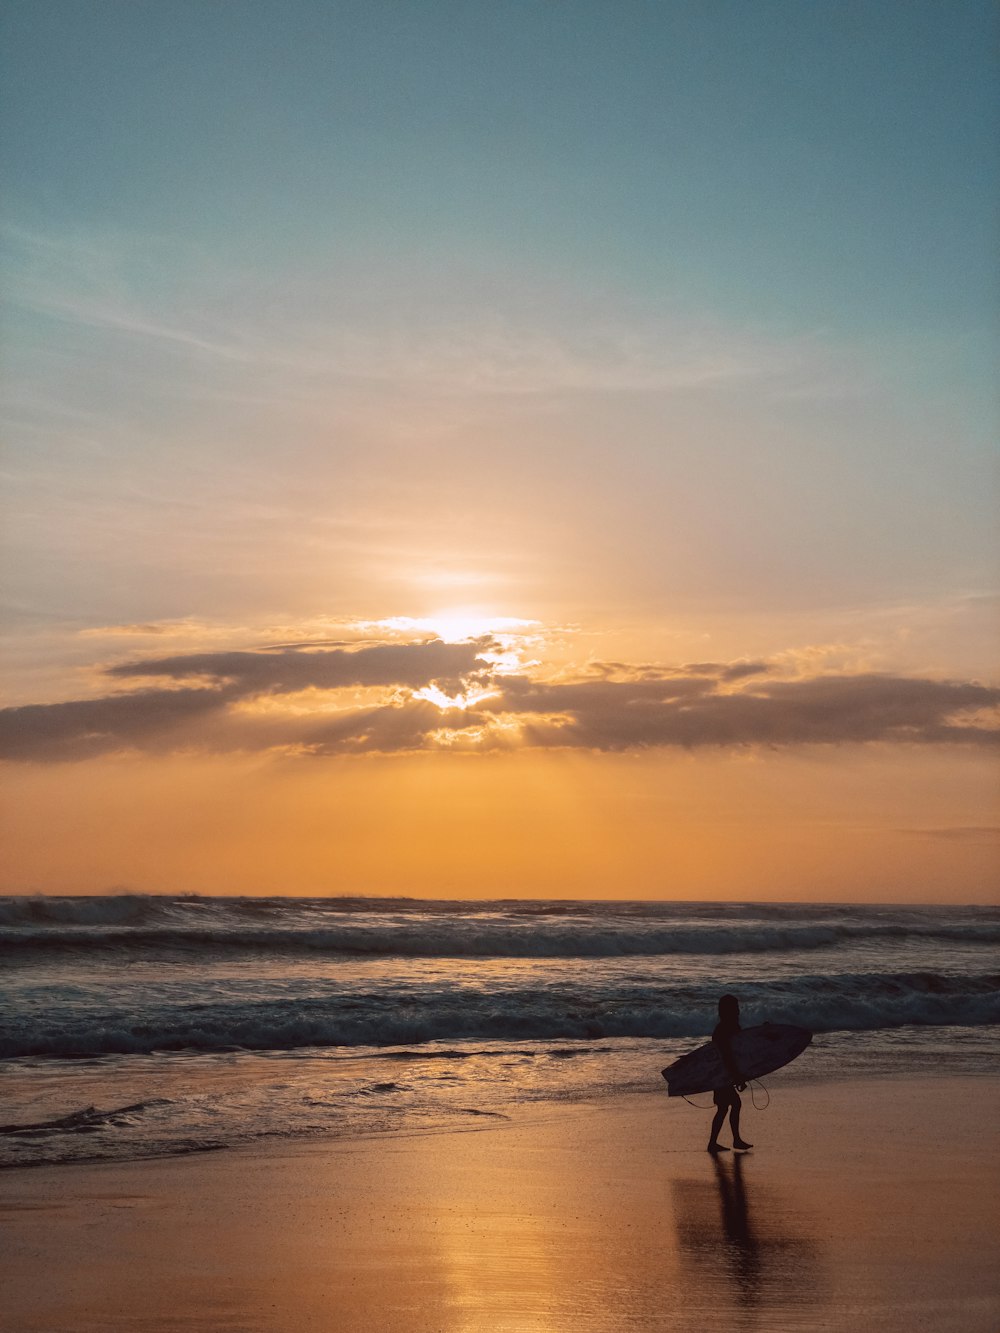 Bức ảnh người đi bộ trên bãi biển với ván lướt sóng ở Bali miễn phí sẽ mang lại cho bạn sự thư giãn, hạnh phúc và thực sự cảm thấy mình đang ở Bali. Hình ảnh này đầy màu sắc và năng động, chắc chắn sẽ làm cho bạn muốn hòa mình vào với không khí mùa hè tươi vui.